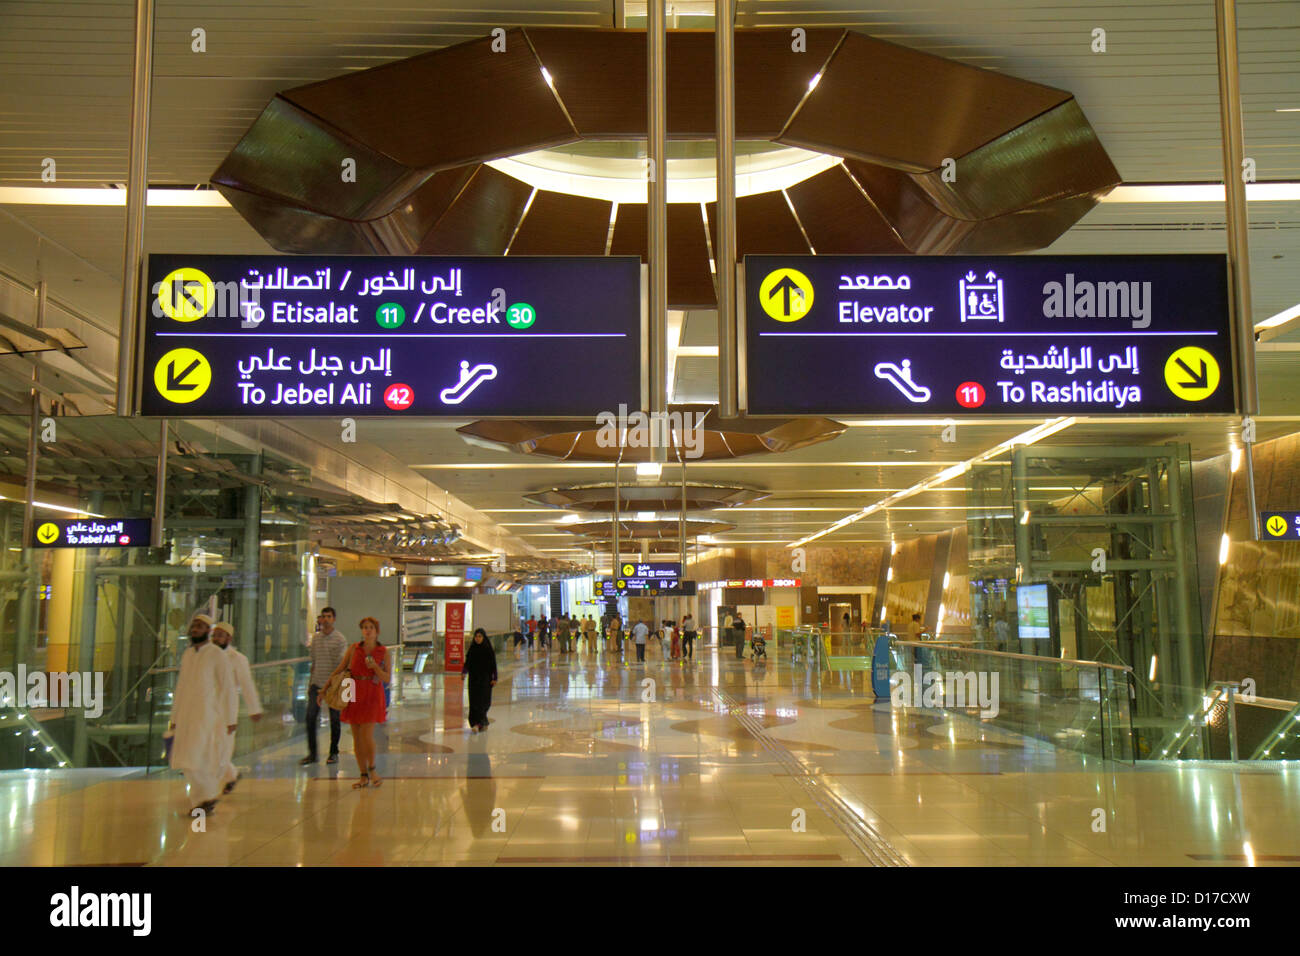 Dubai Émirats Arabes Unis,Deira,Al Rigga,Union Metro Station,Red Green Line,métro,train,intérieur,intérieur,design,anglais,arabe,langue,bil Banque D'Images